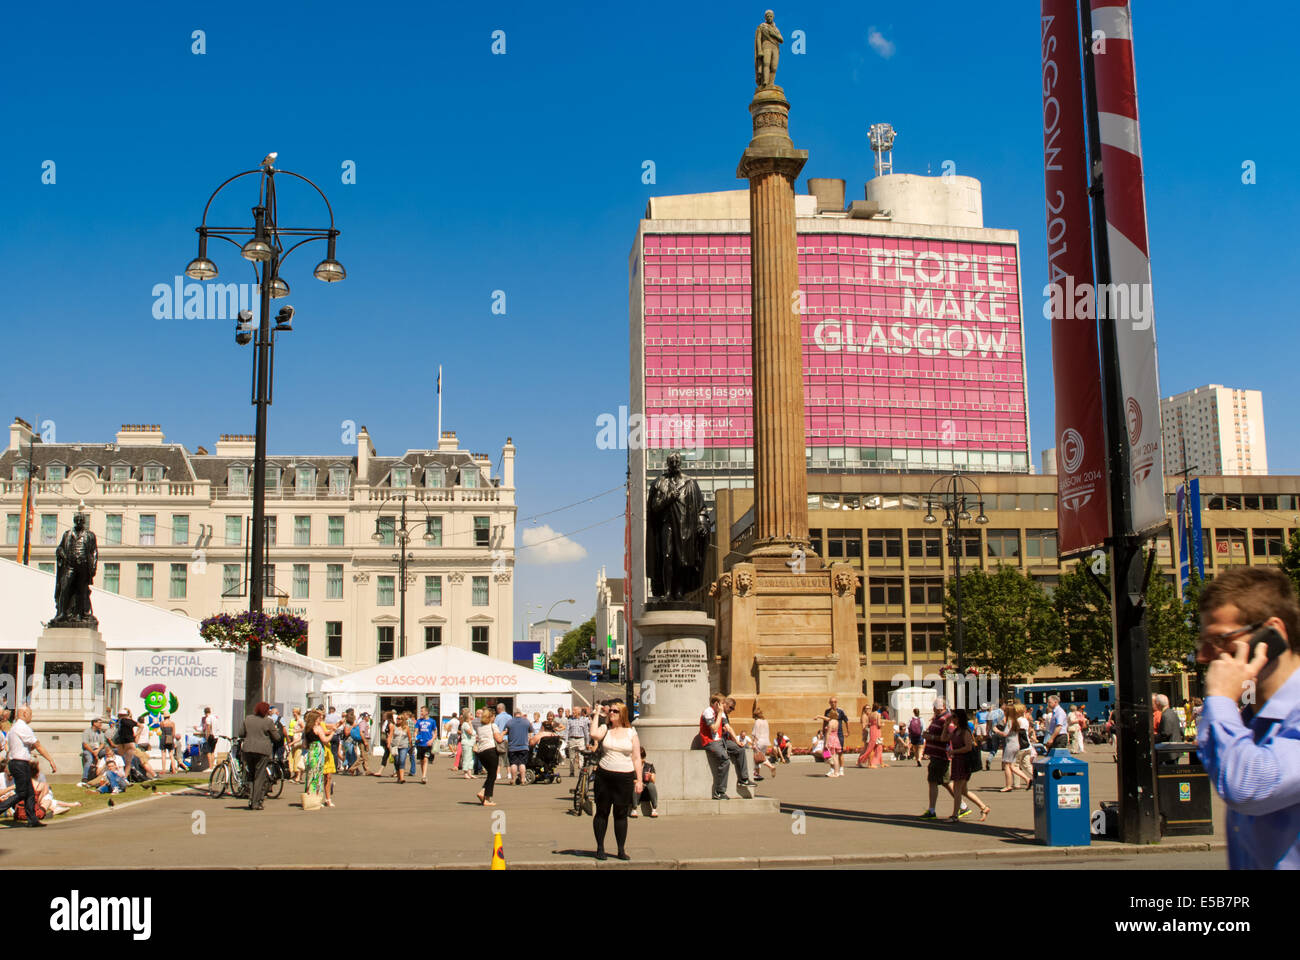 Menschen versammeln sich in George Square während der Commonwealth Games 2014 in Glasgow, Schottland Stockfoto